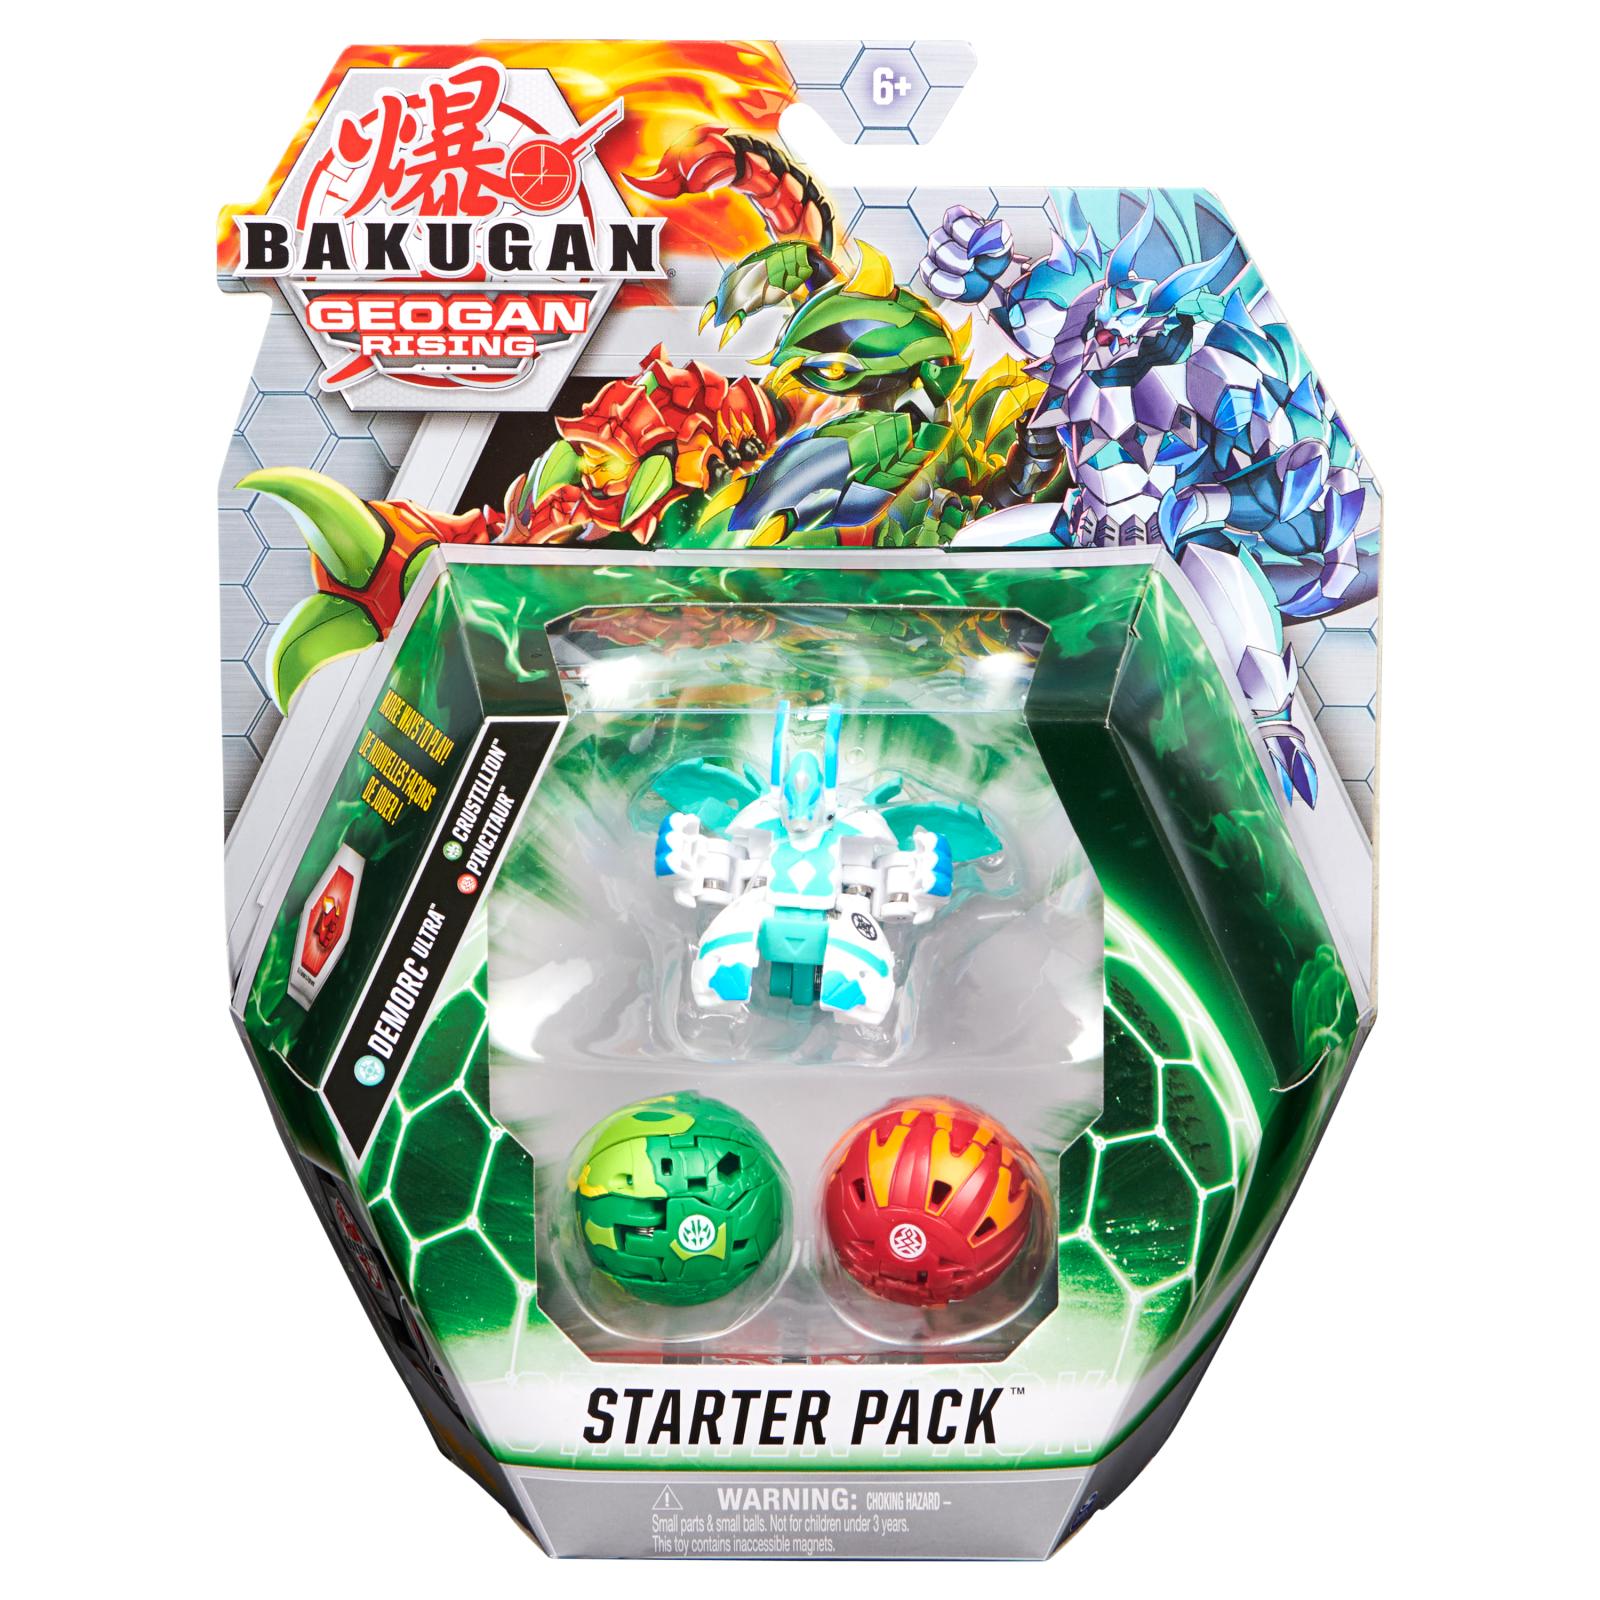 Bakugan S3 Geogan Rising Demorc Ultra Starter Pack (3db-os kezdőkészlet) - Ajándéktárgyak Ajándéktárgyak